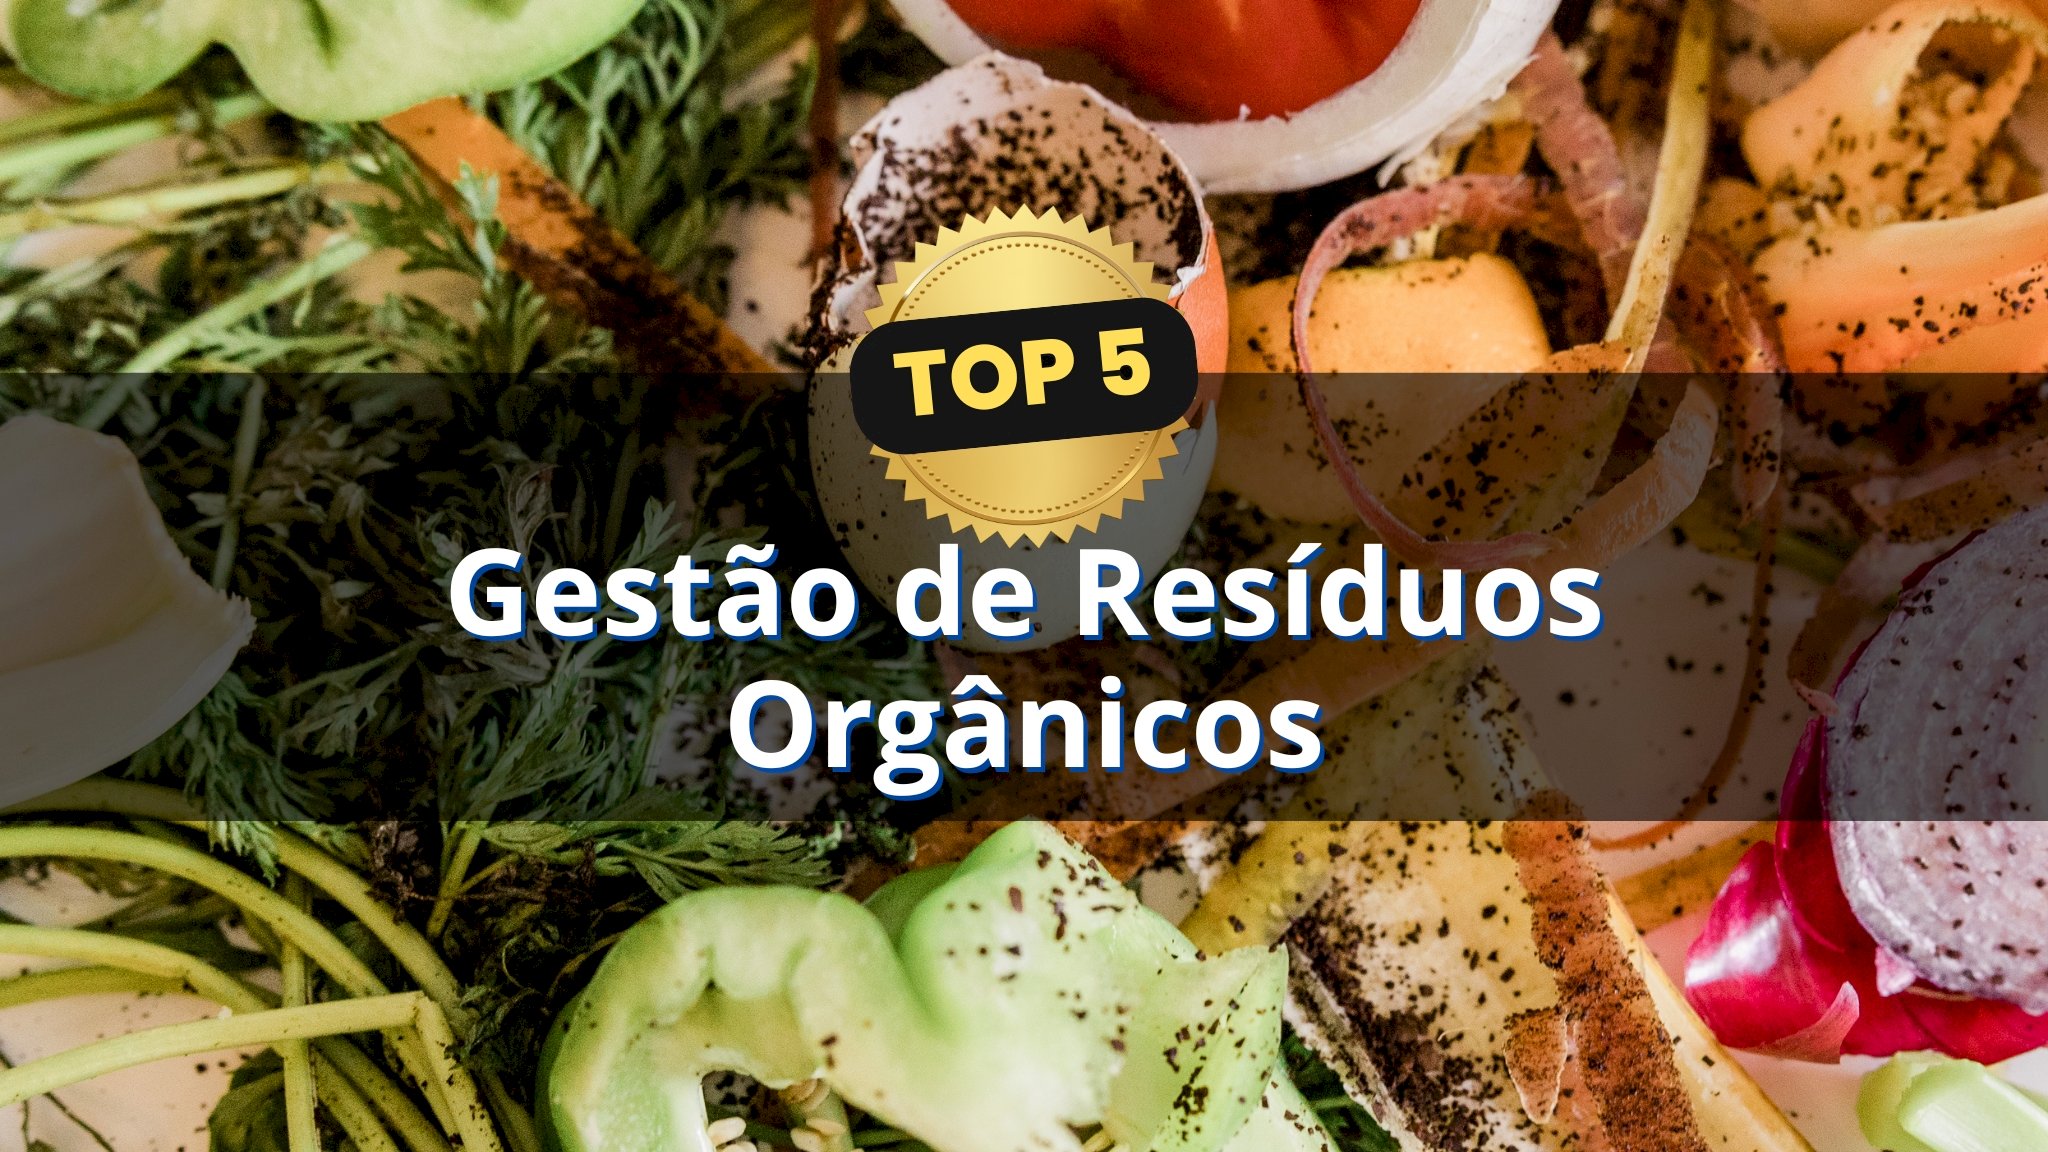 Top 5: Gestão de Resíduos Orgânicos